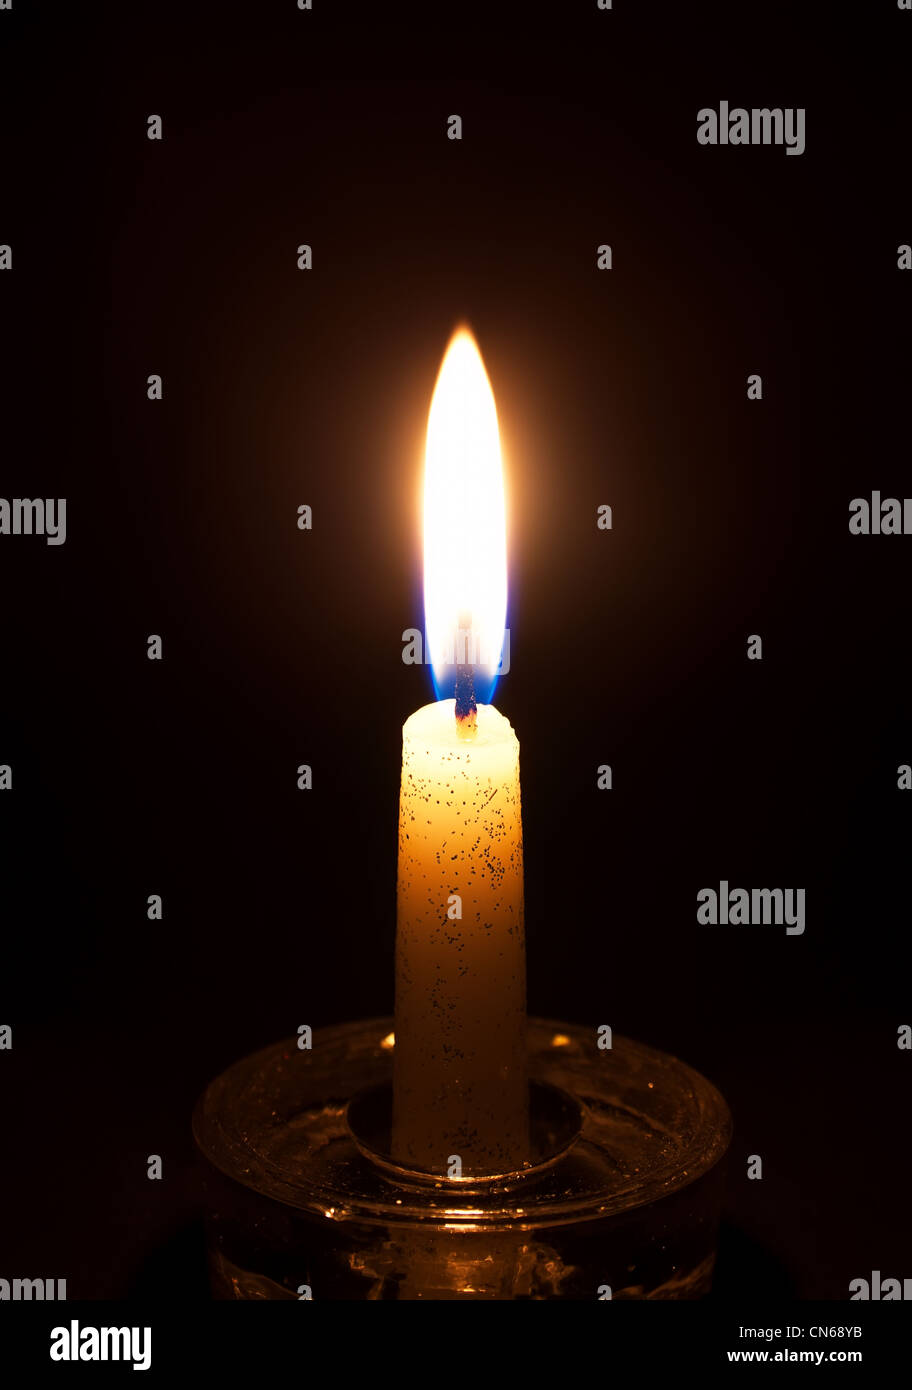 Scheda di memoria candela immagini e fotografie stock ad alta risoluzione -  Alamy